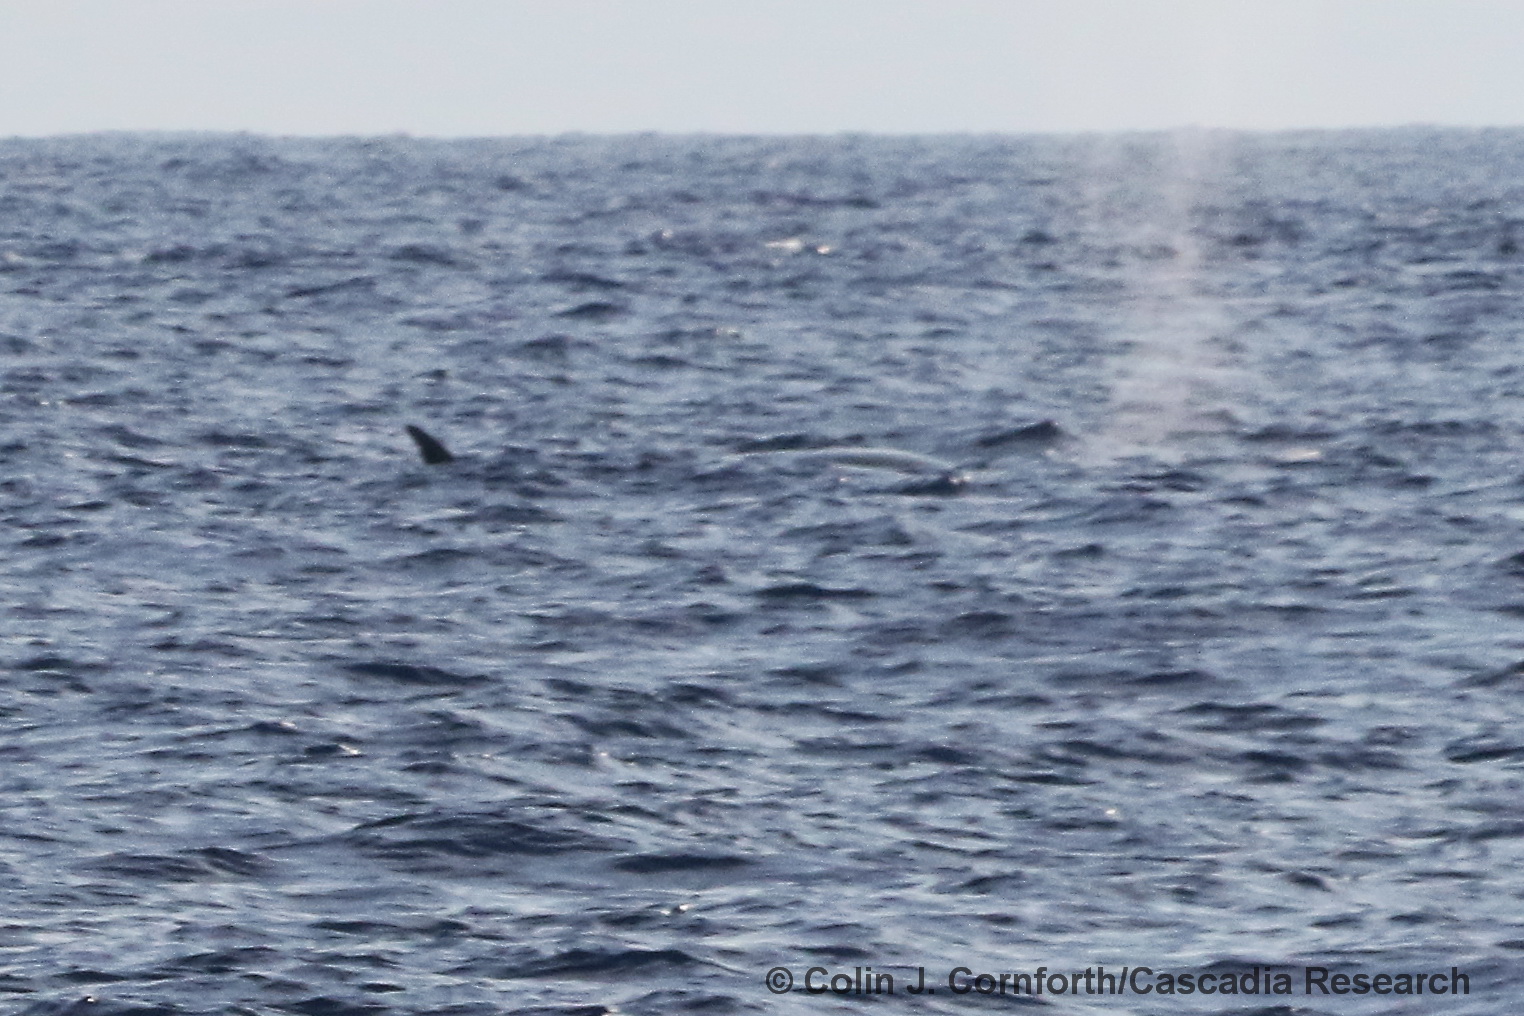 sei whale, Balaenoptera borealis, Kona, Hawaii, whale